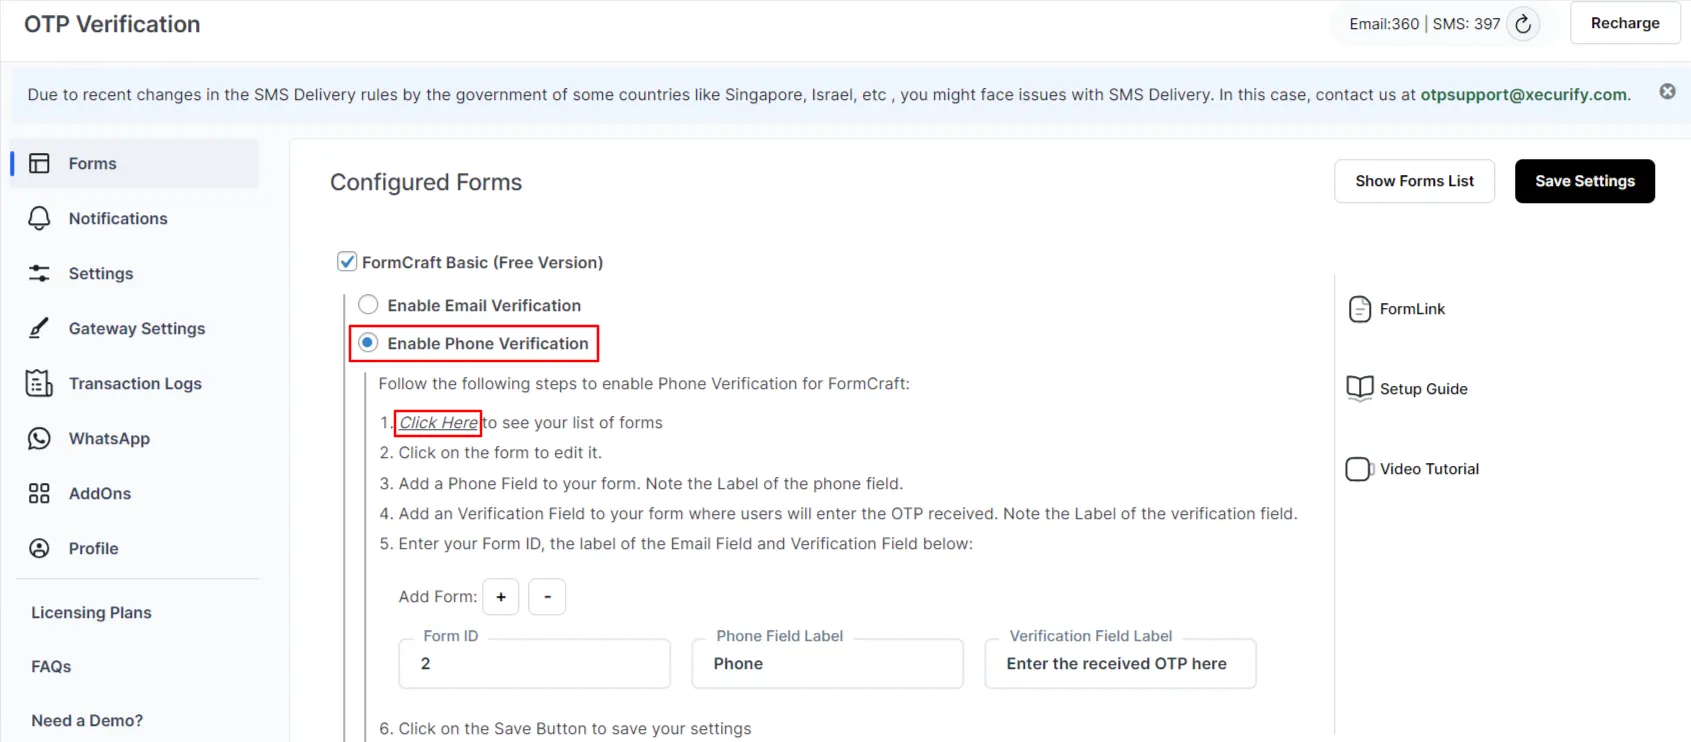 Verificación otp gratuita de formcraft básico: habilitar la verificación por teléfono